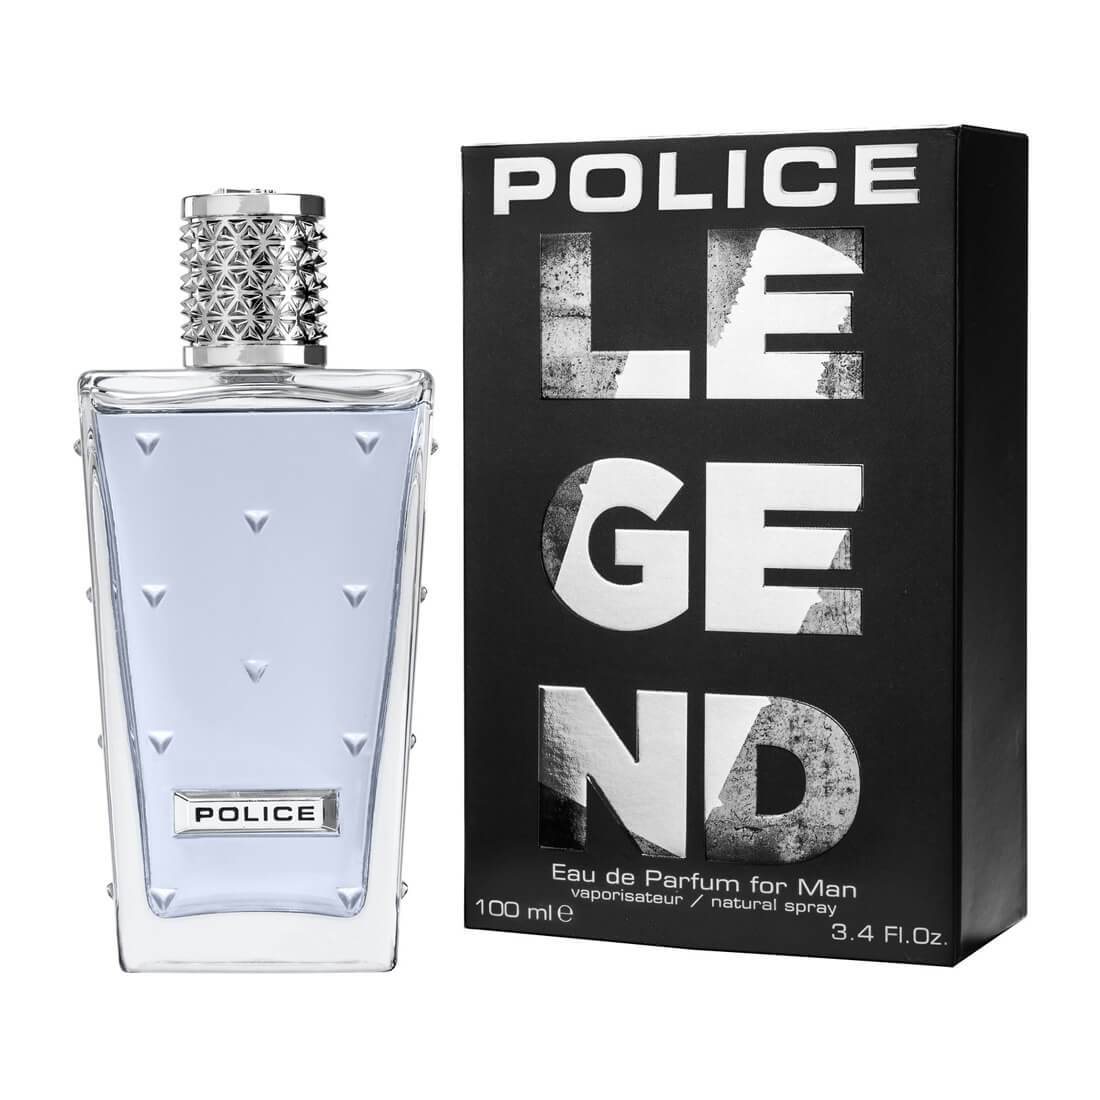 Police Legend Eau de Parfum For Man 100ml